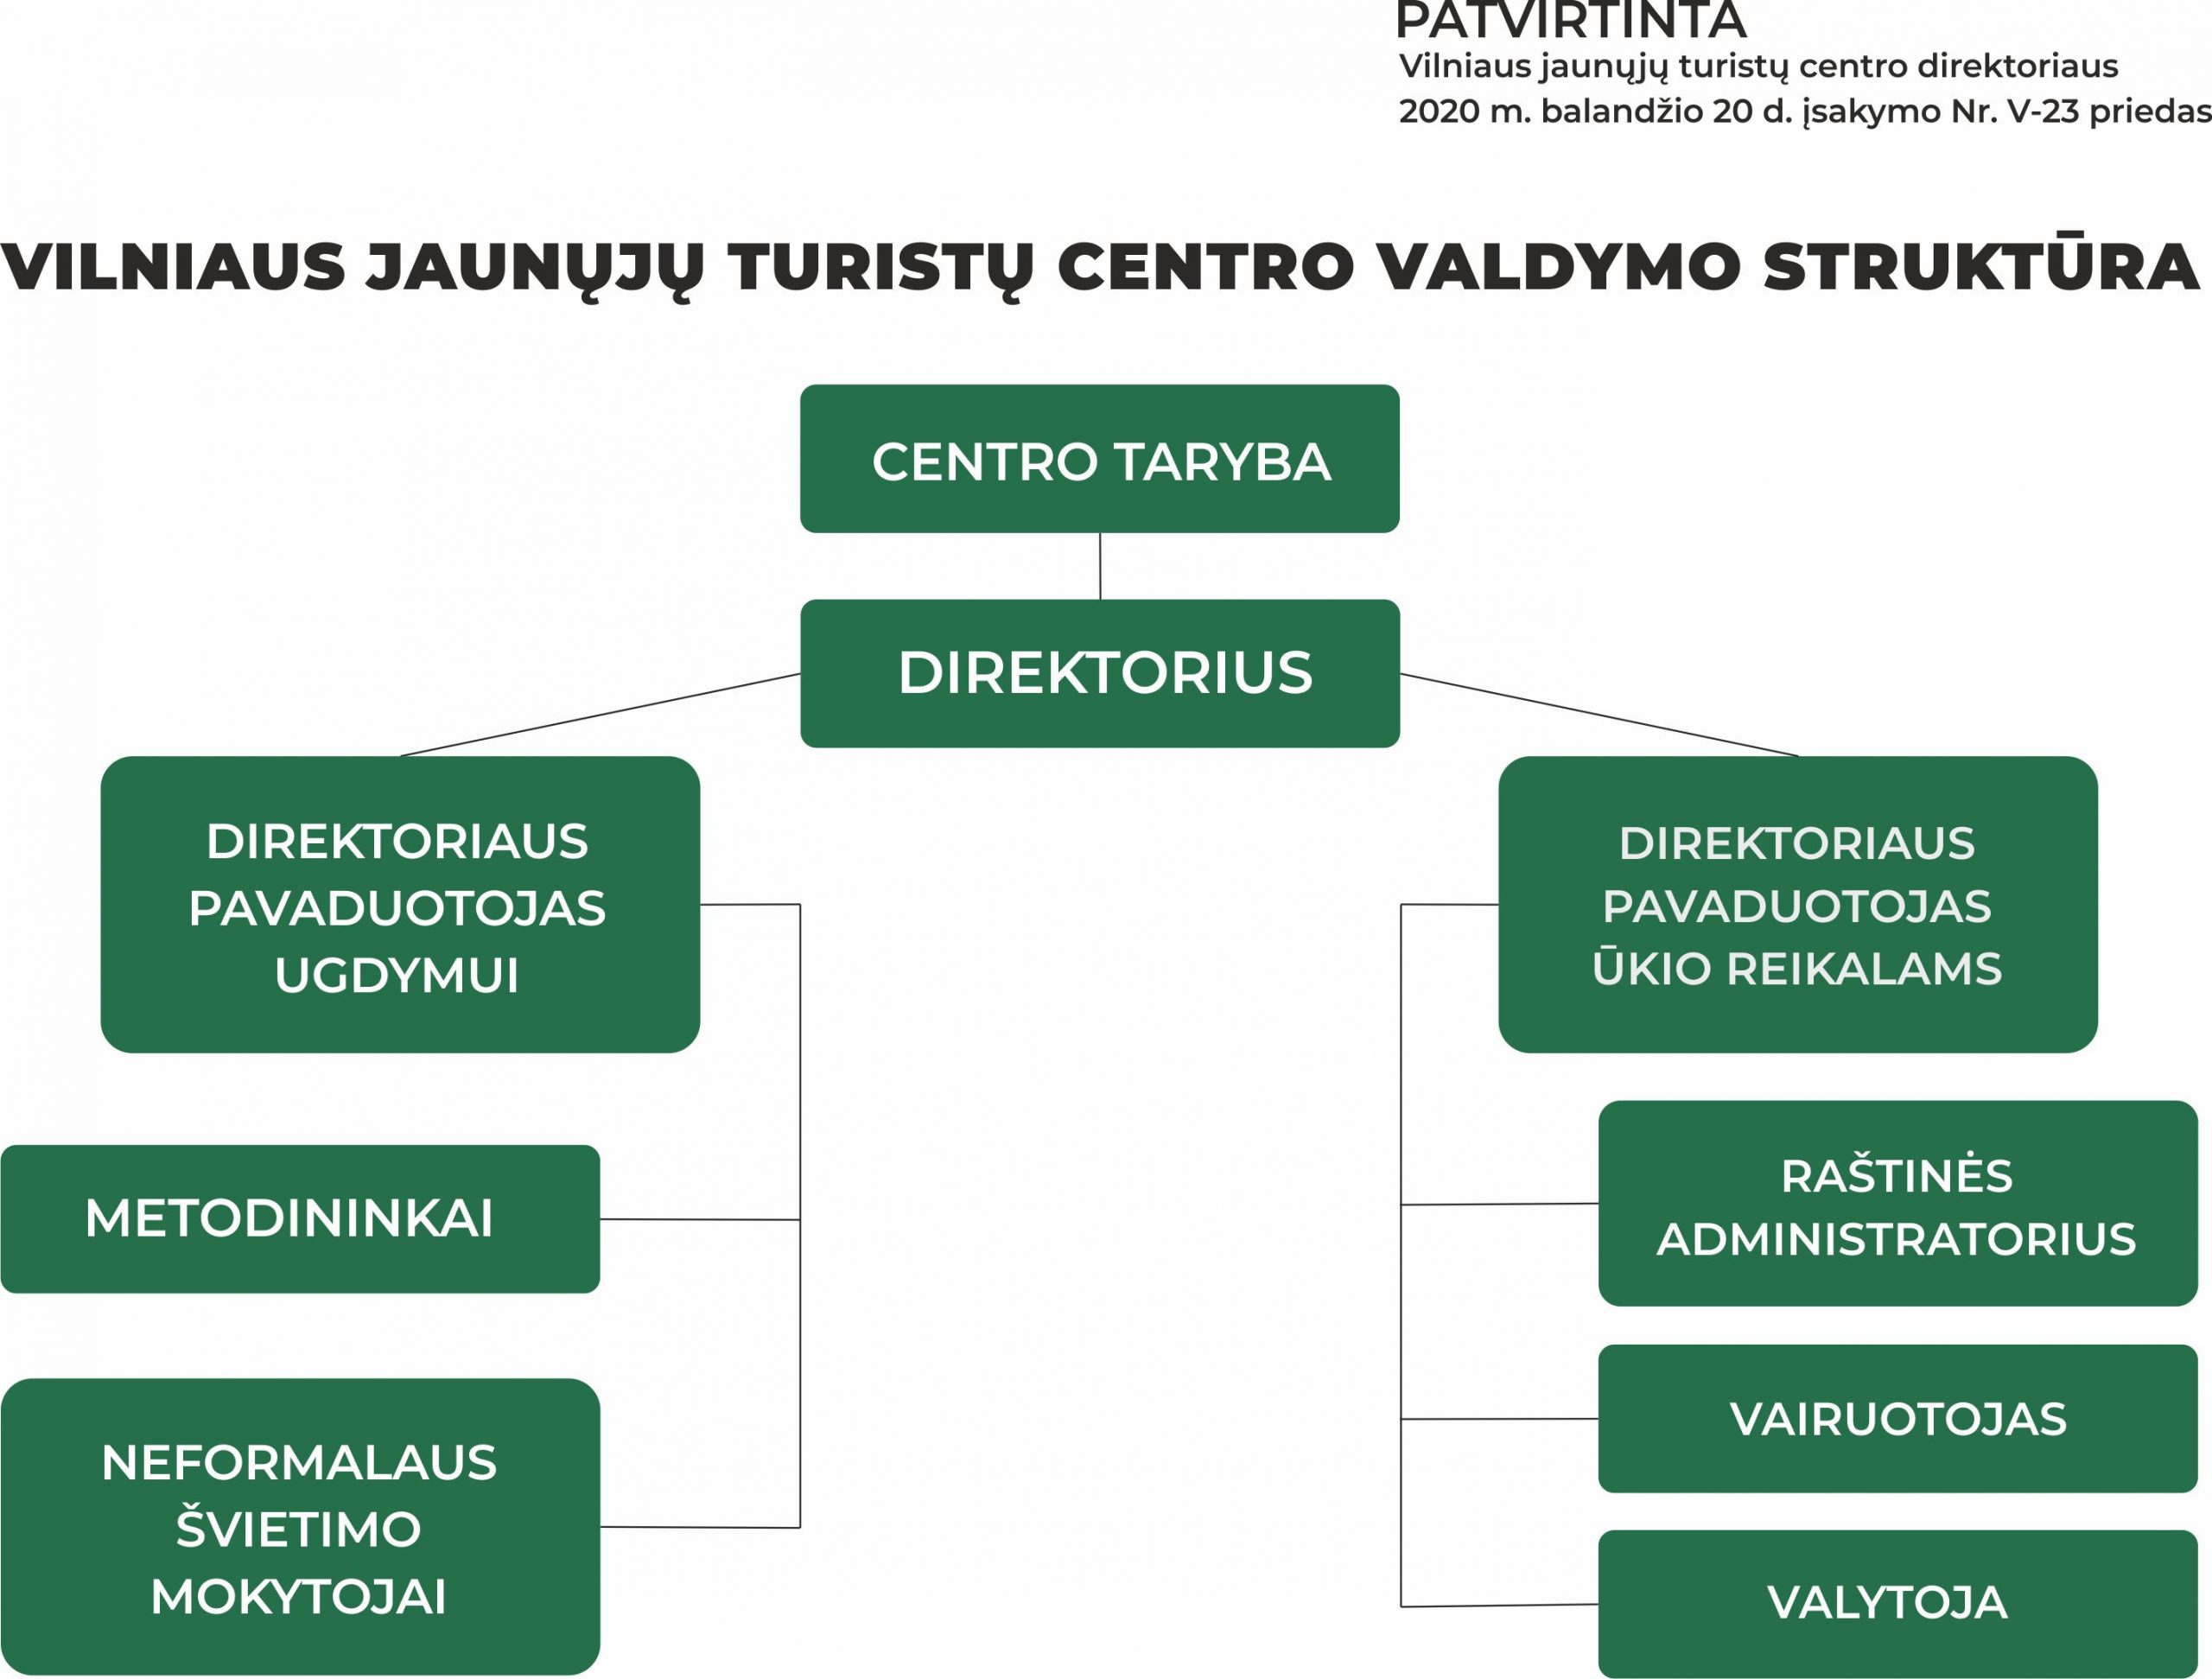 Vilniaus jaunųjų turistų centro valdymo struktūra